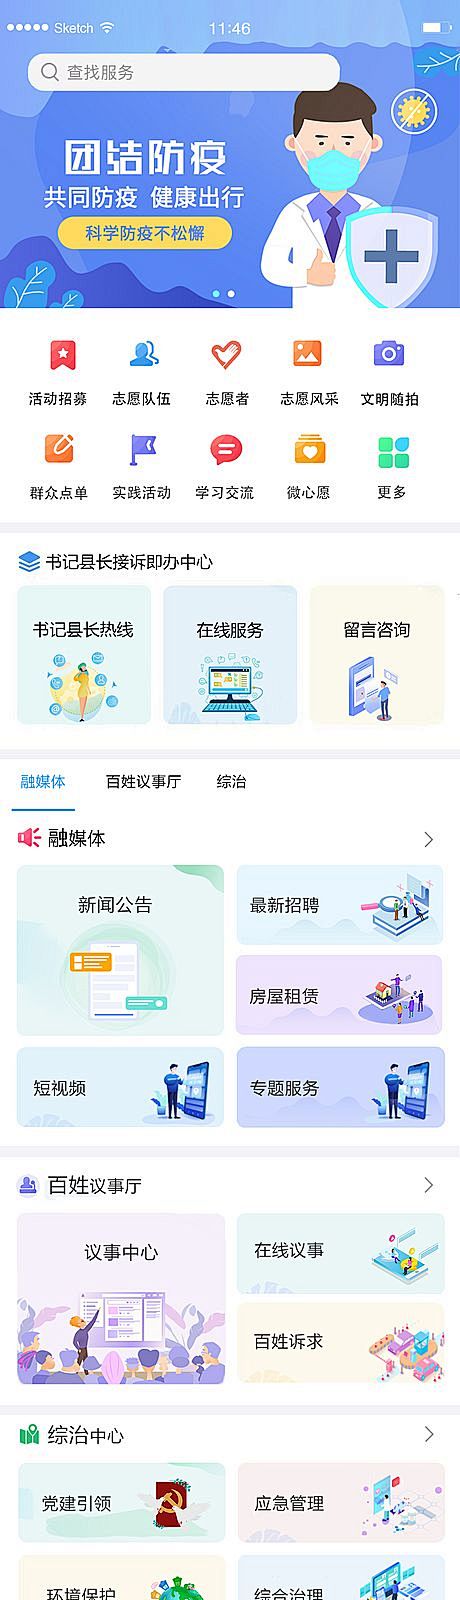 仙图-智慧政务智慧城市app小程序设计图